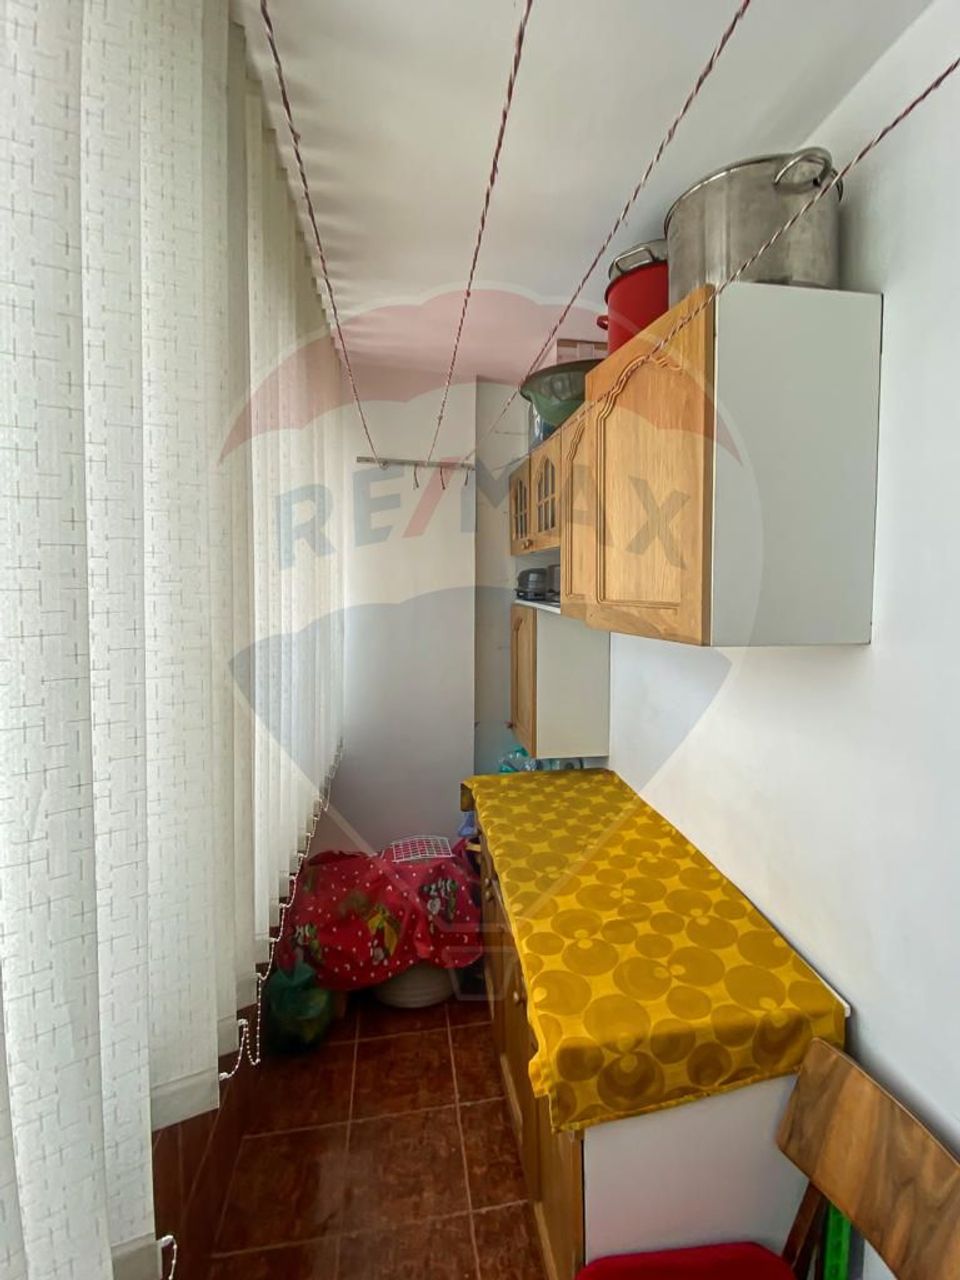 Apartament, de vânzare, în Suceava, Mărășești 2 camere, langă Gen. 3